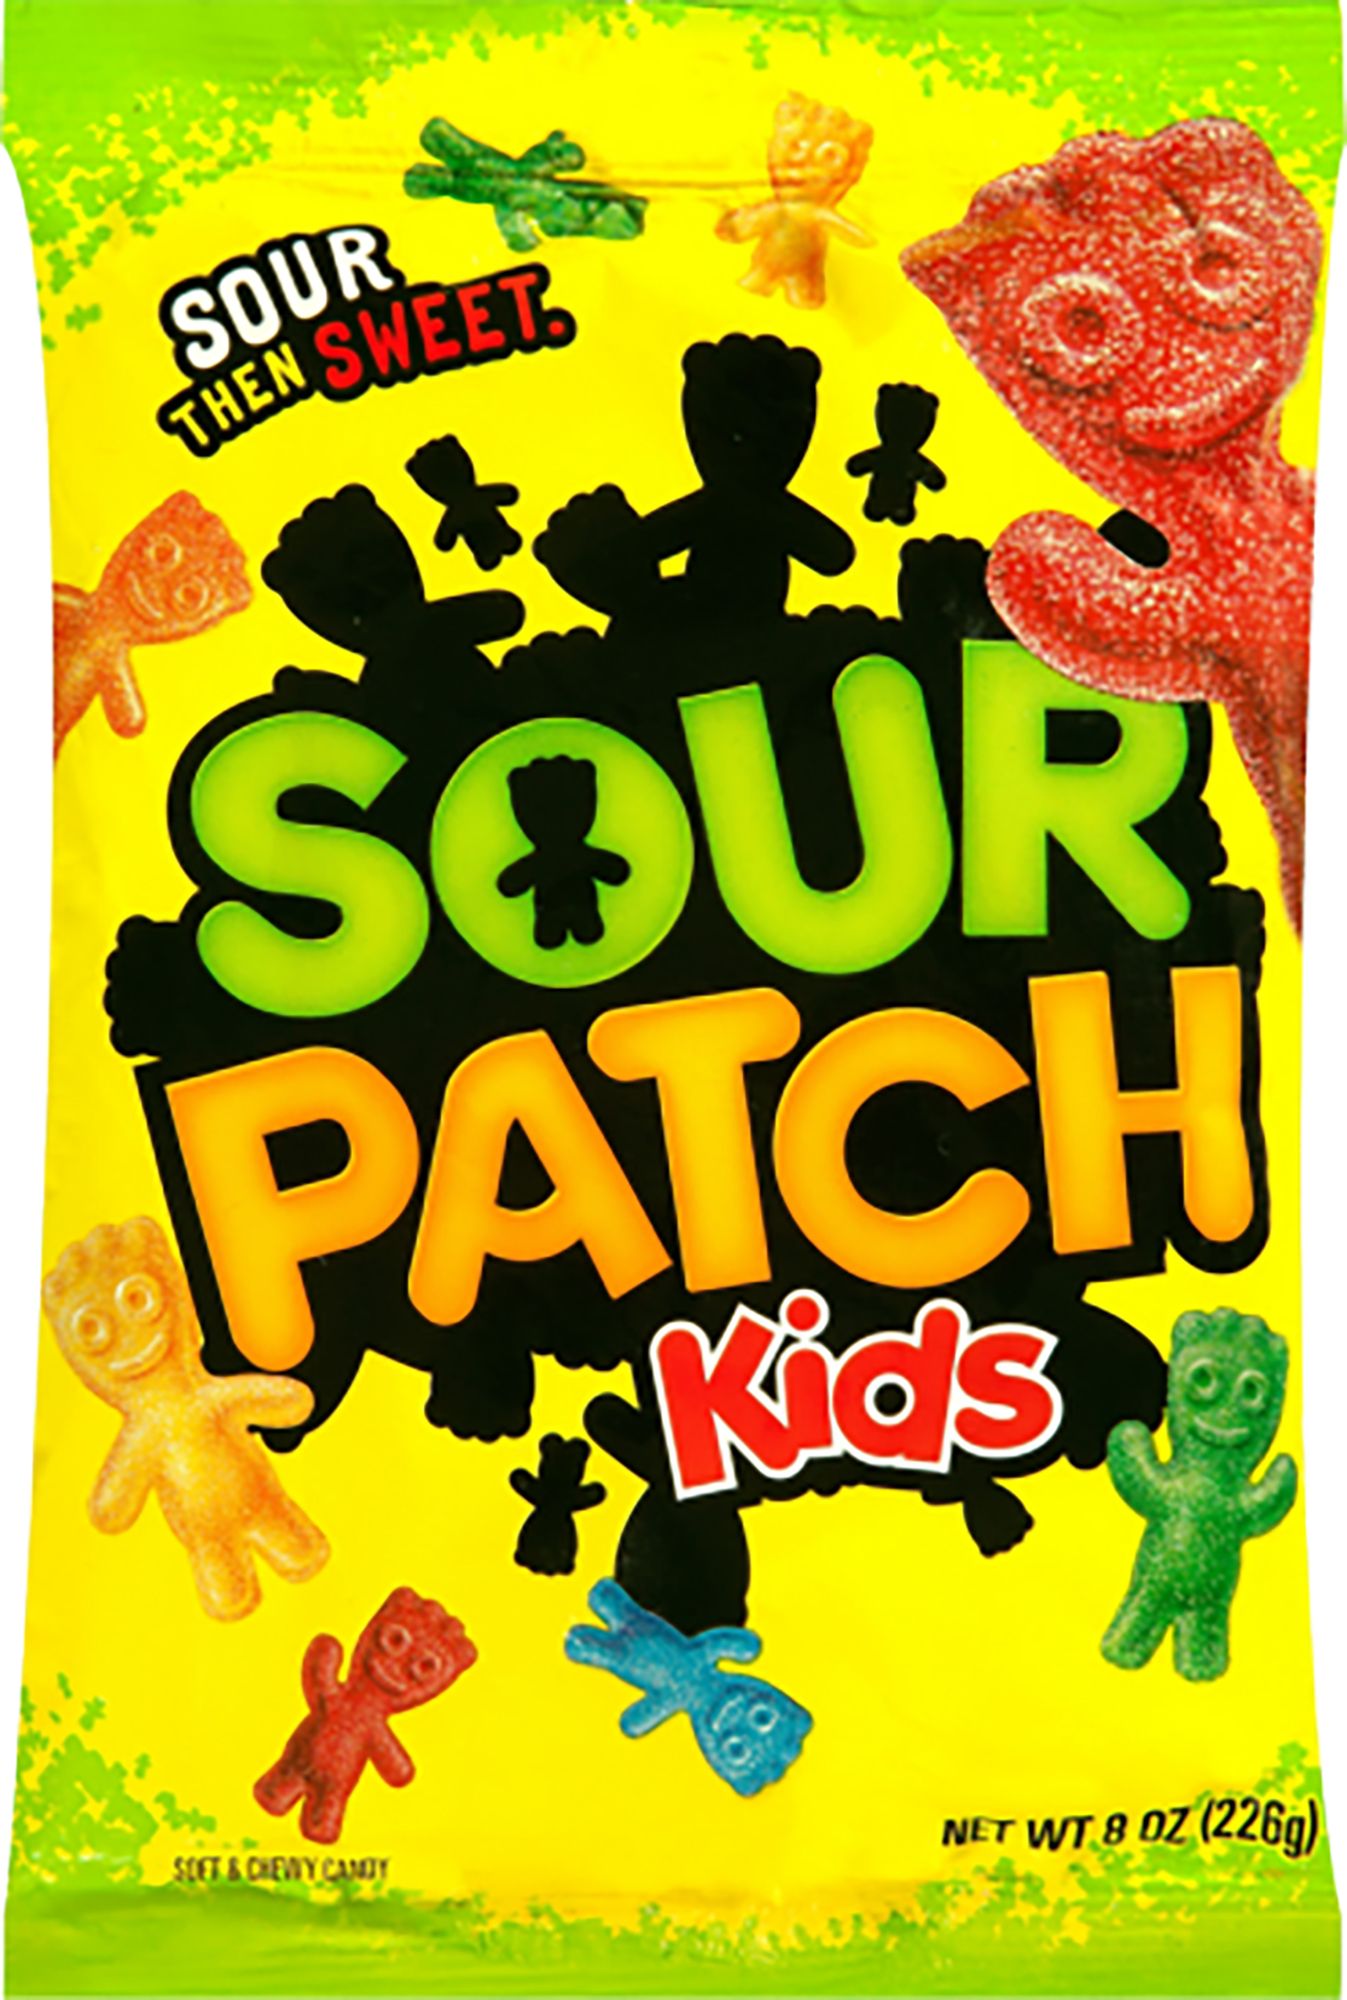 Sour Patch Kids Bag